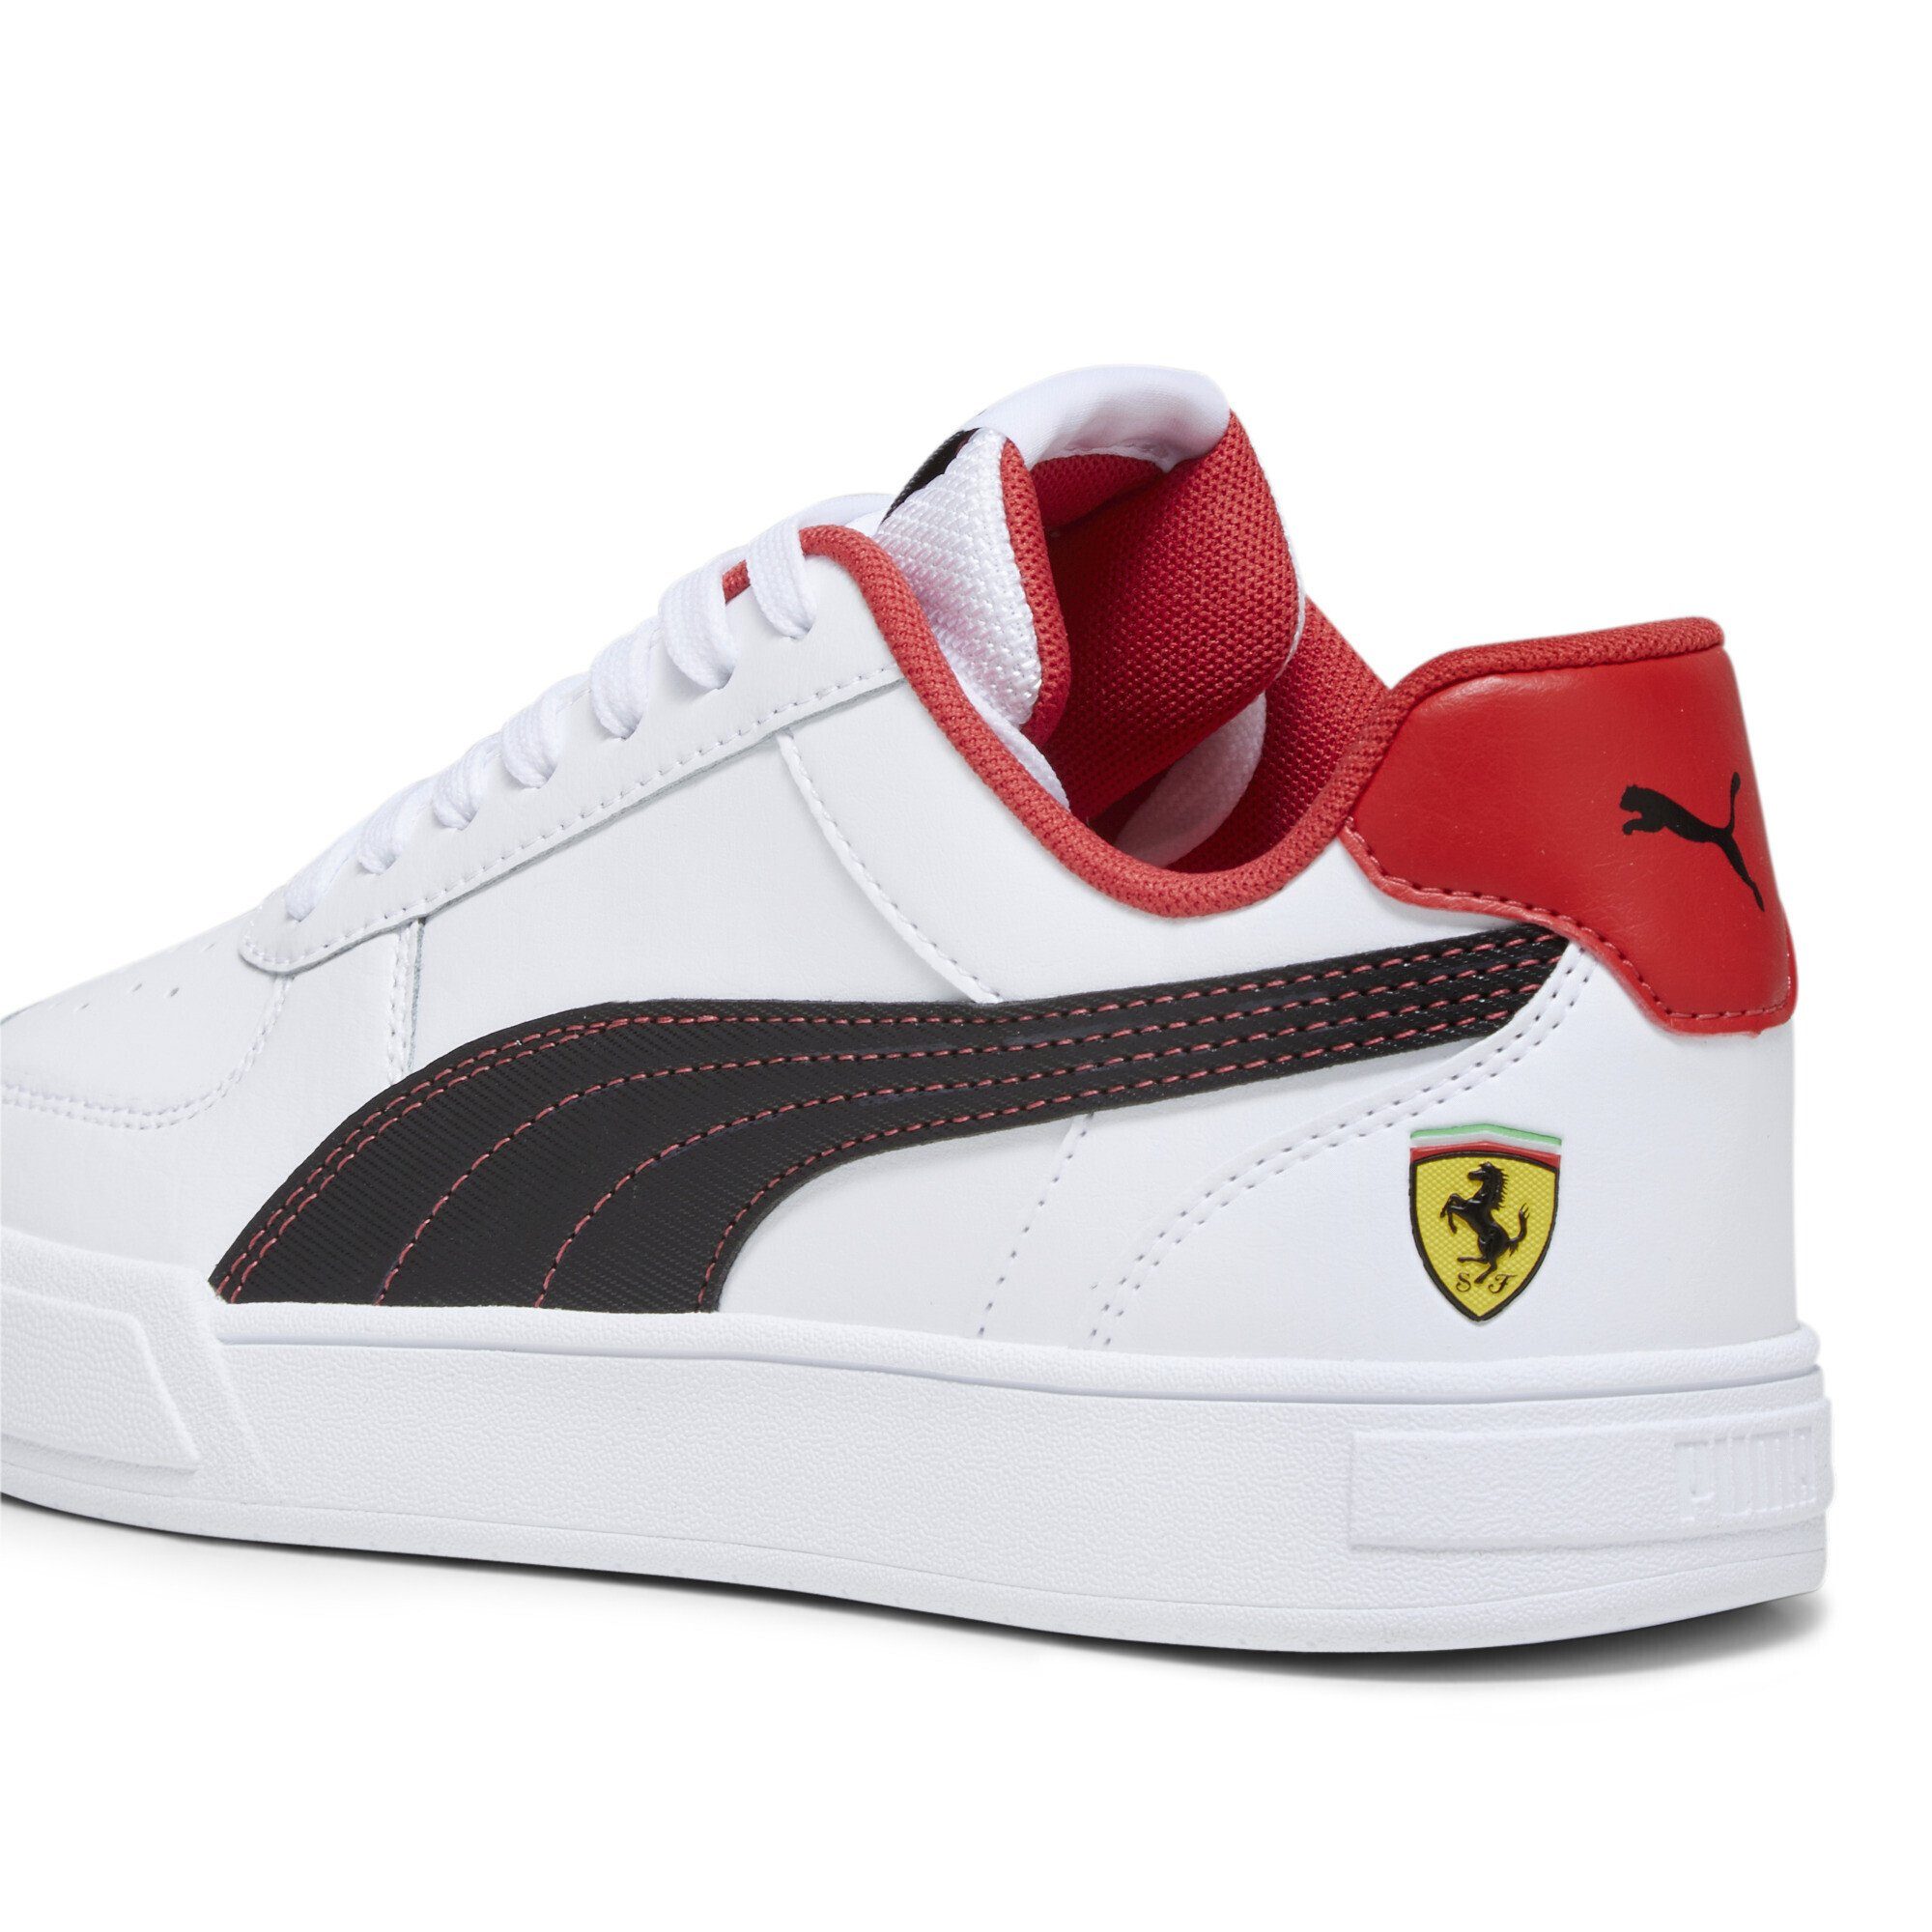 Caven Jugendliche am Perforation Scuderia Sneakers Zehenbereich Sneaker, PUMA Ferrari